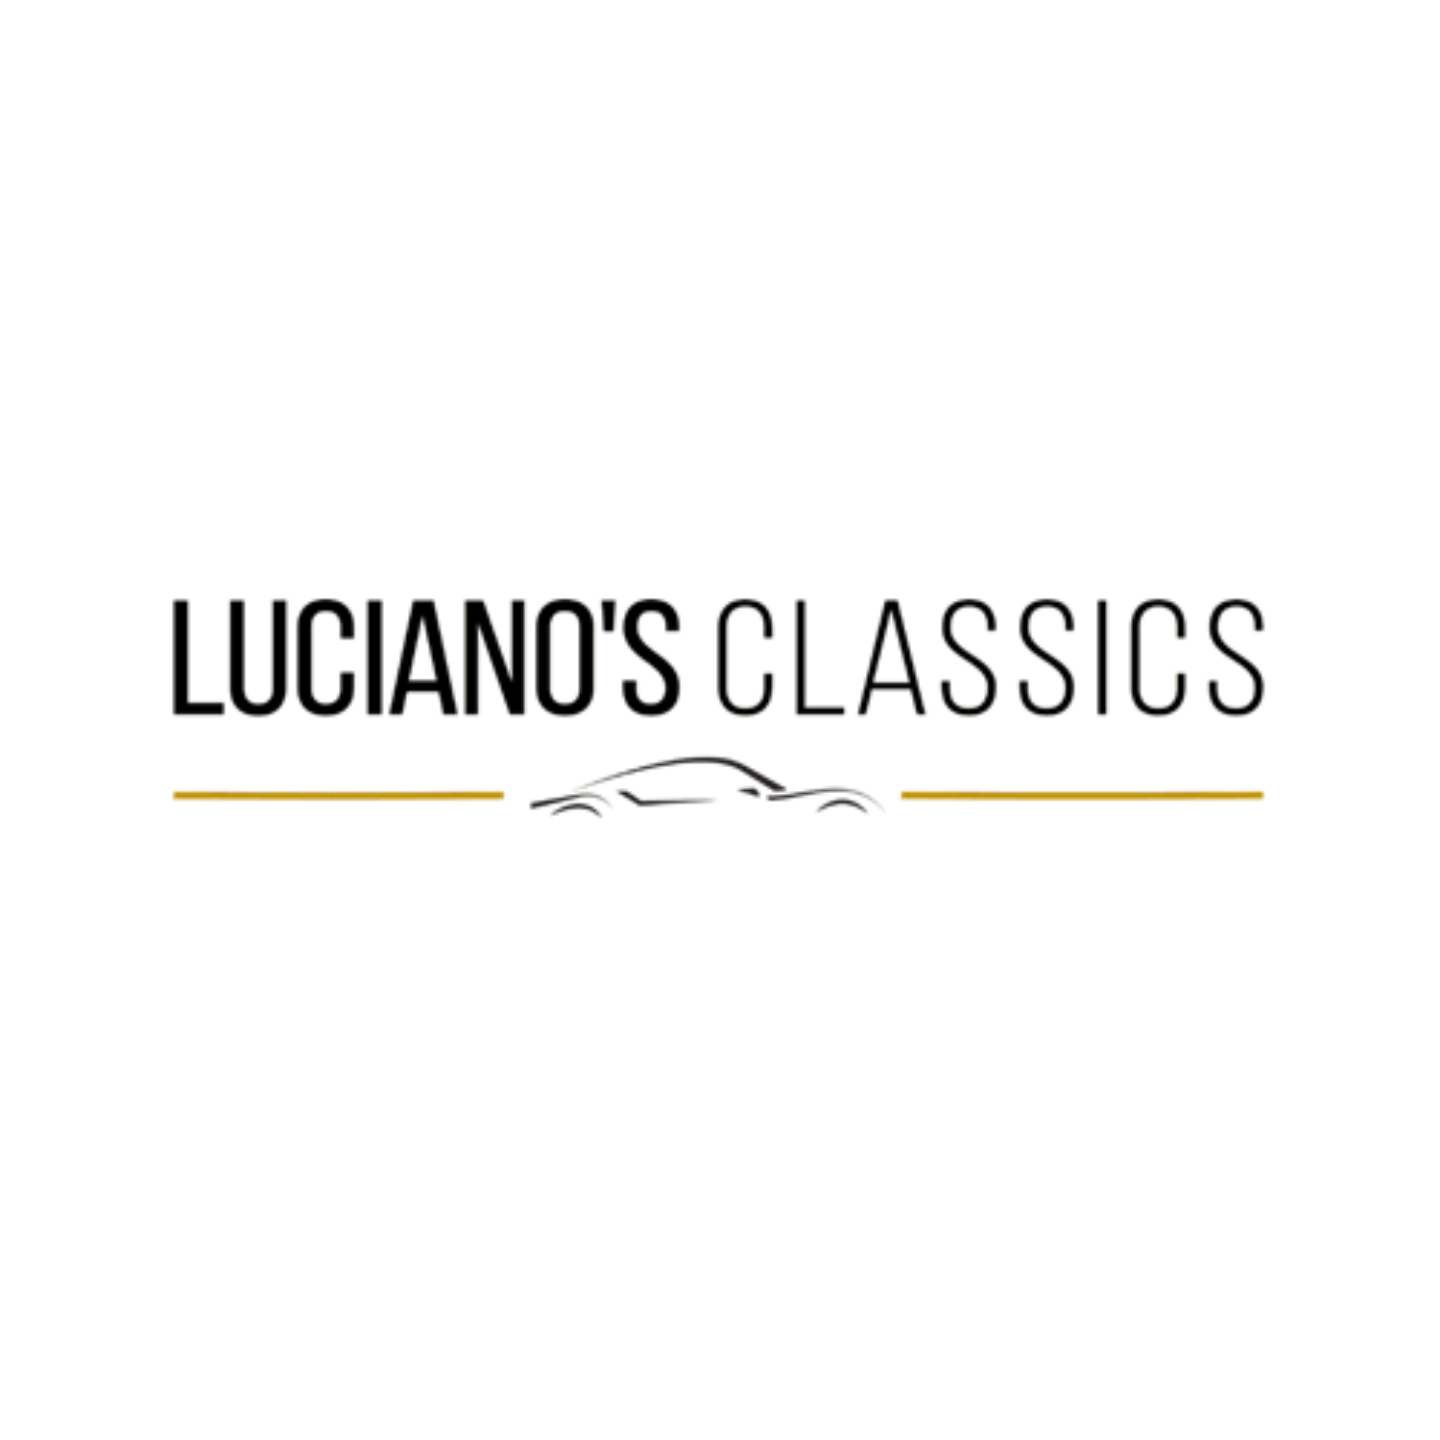 Lucianos classics